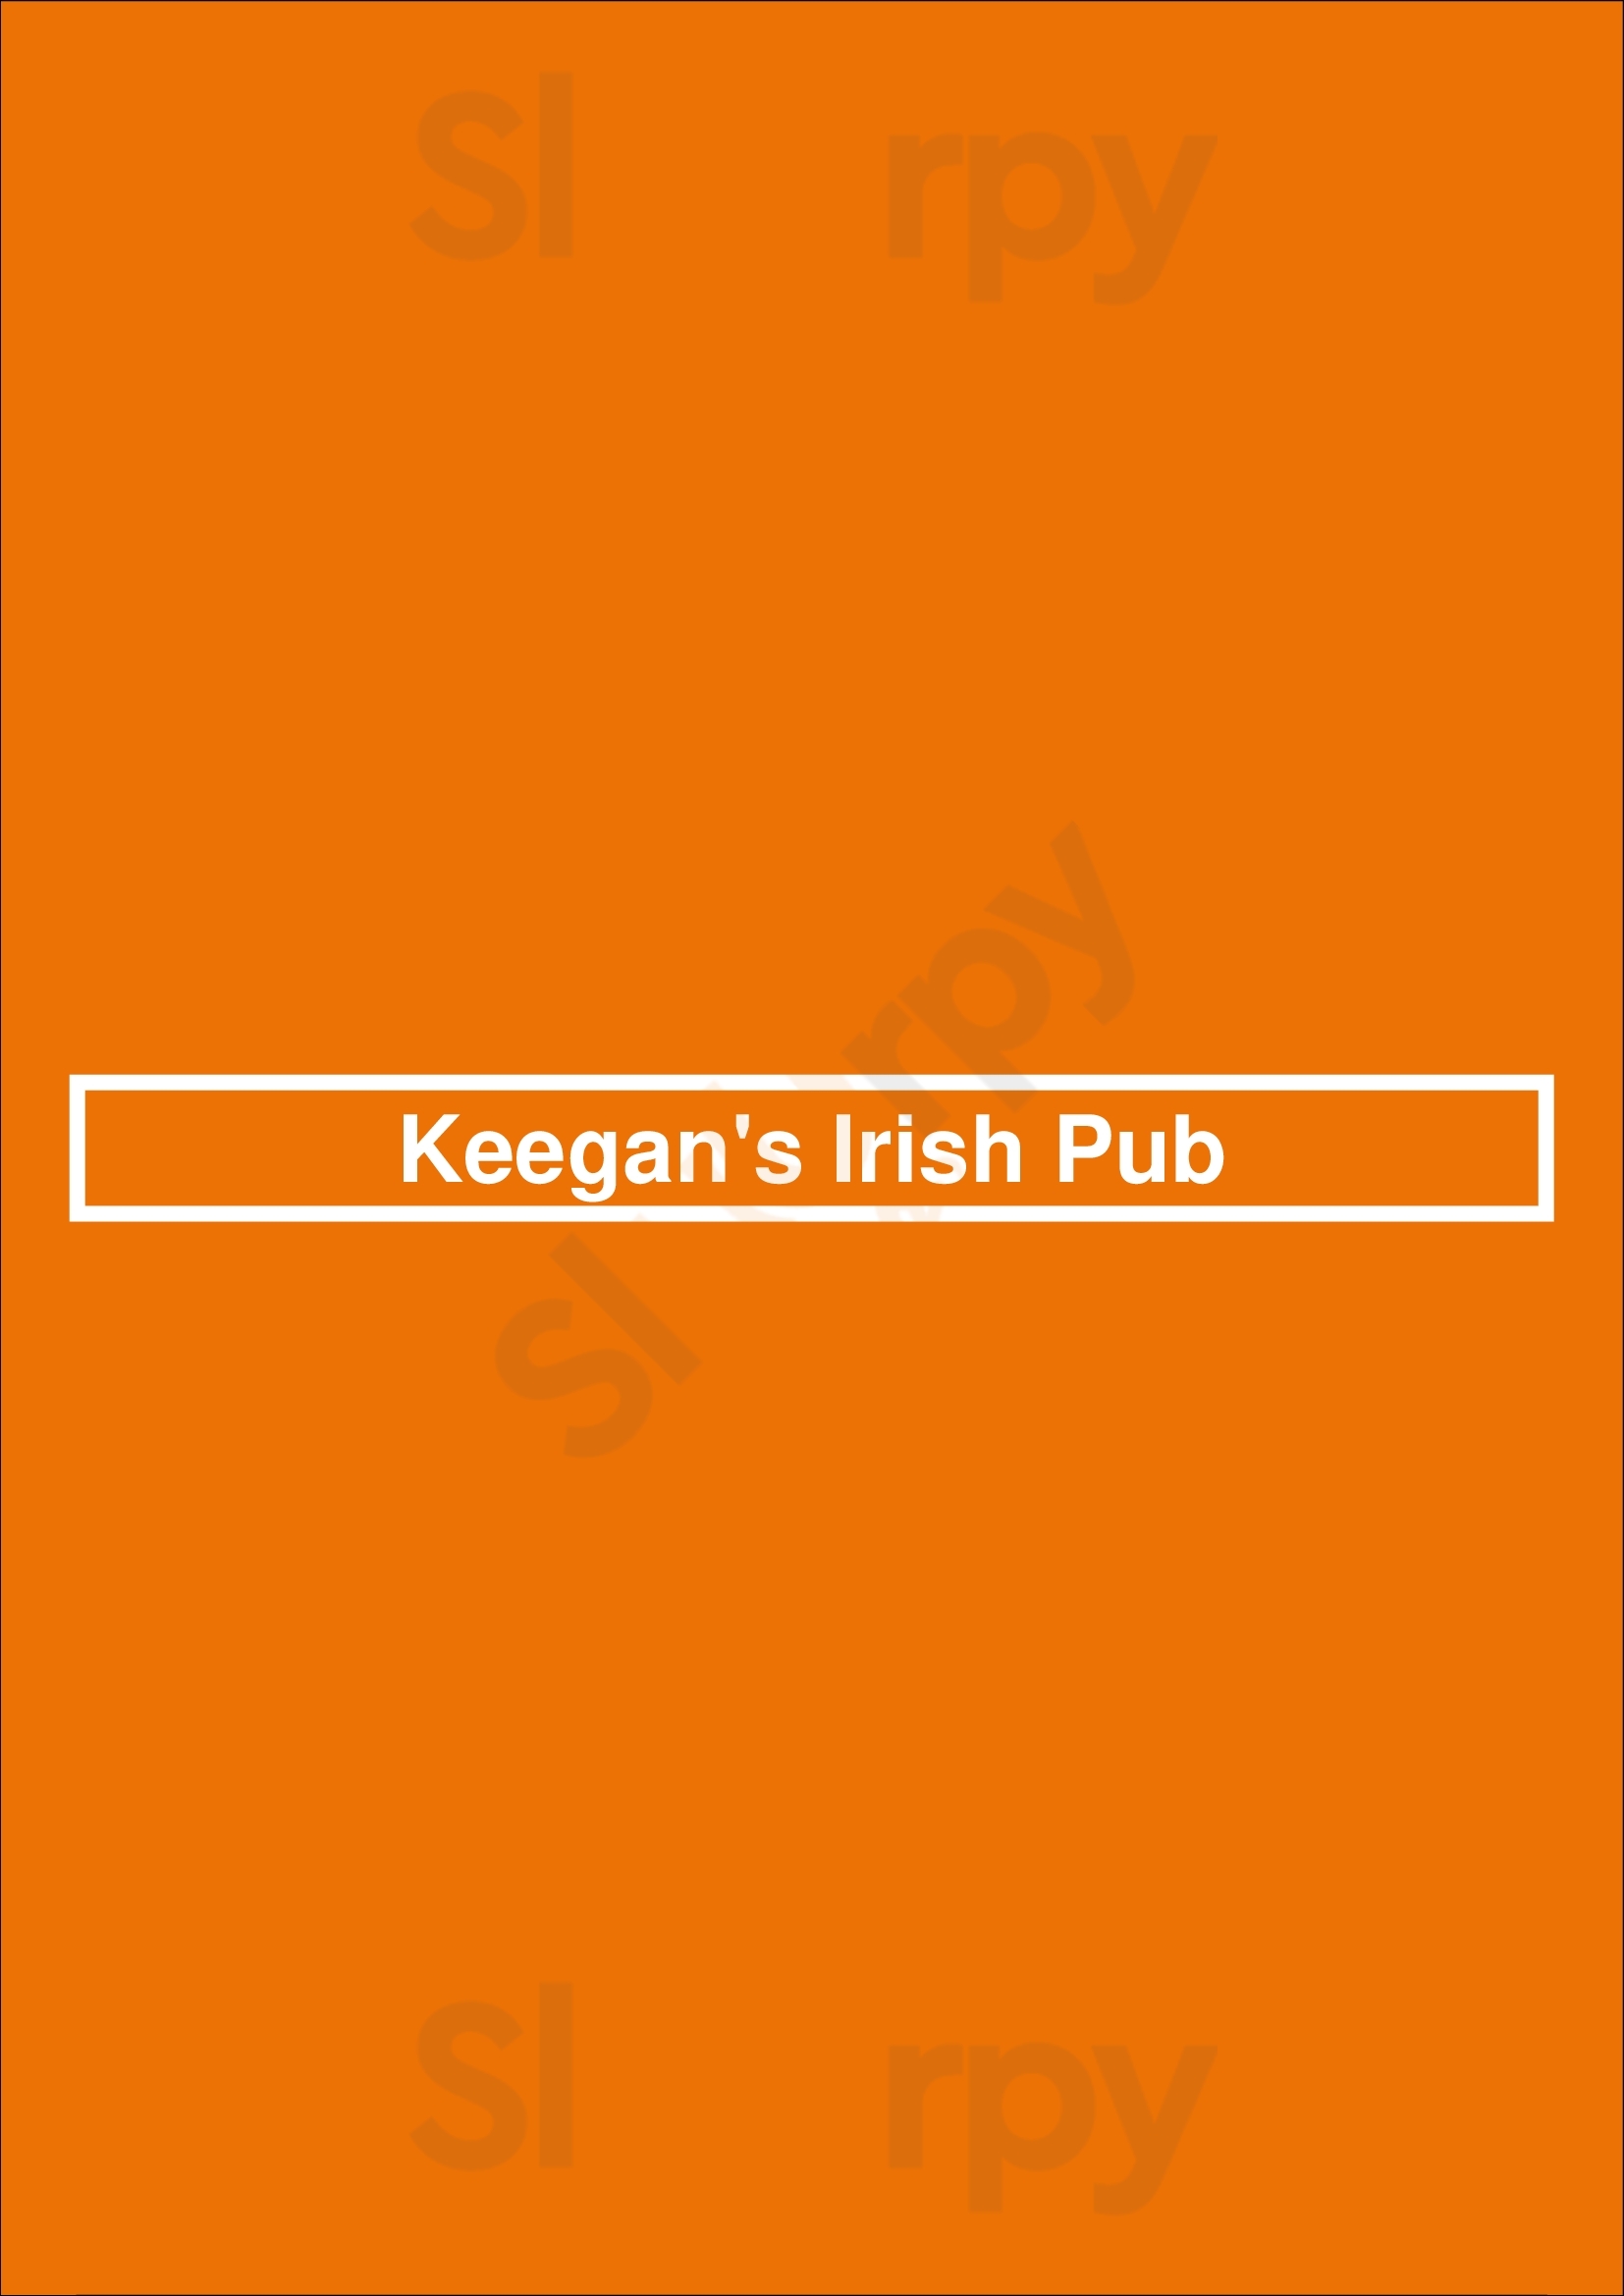 Keegan's Irish Pub Minneapolis Menu - 1